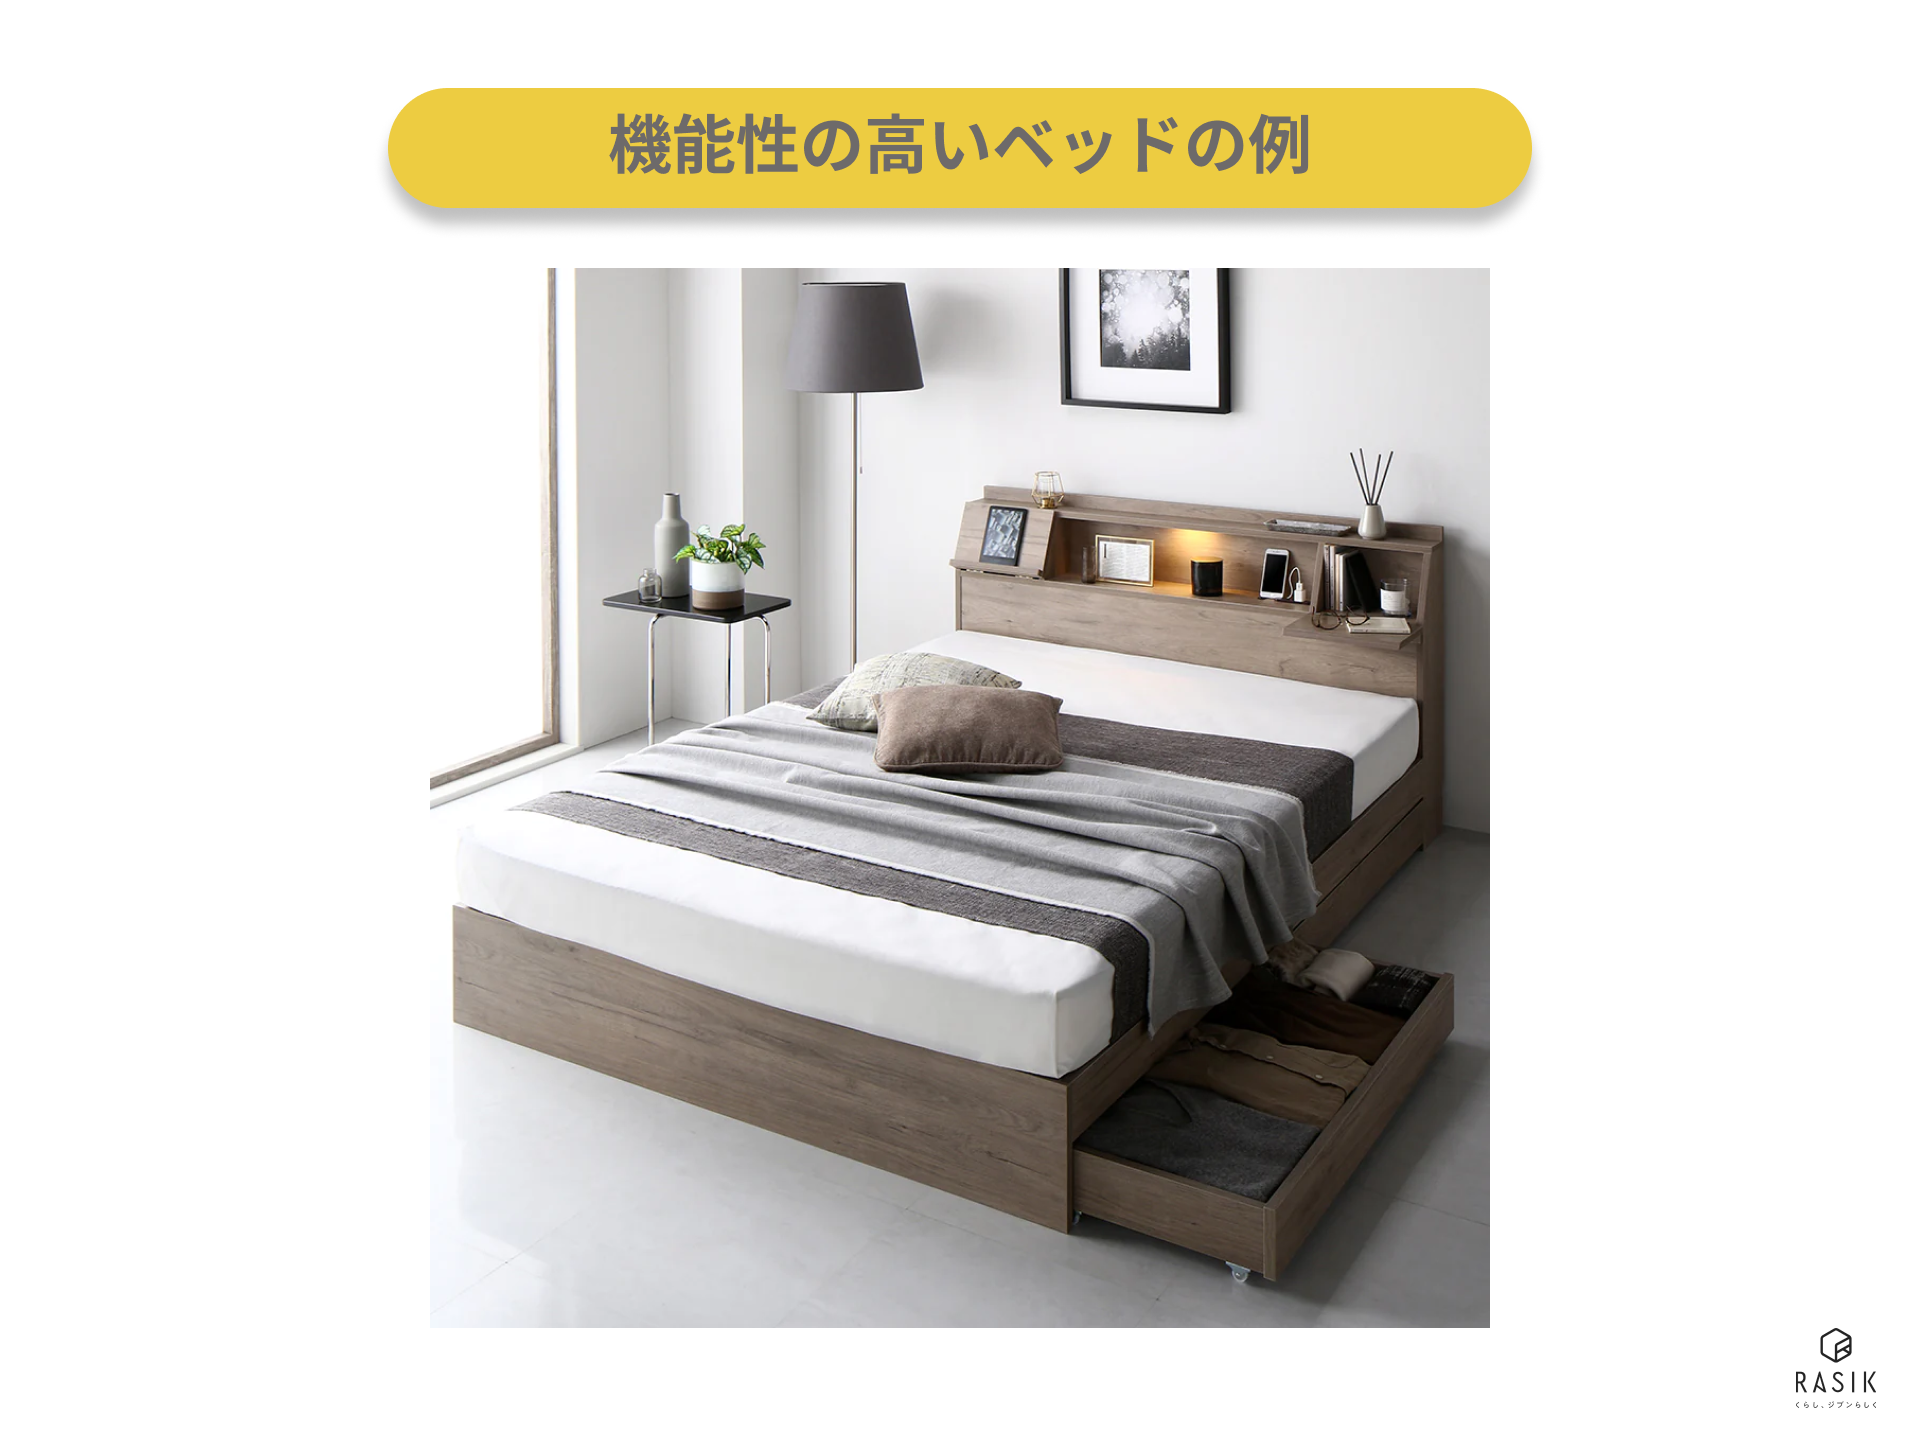 機能性の高いベッドの例